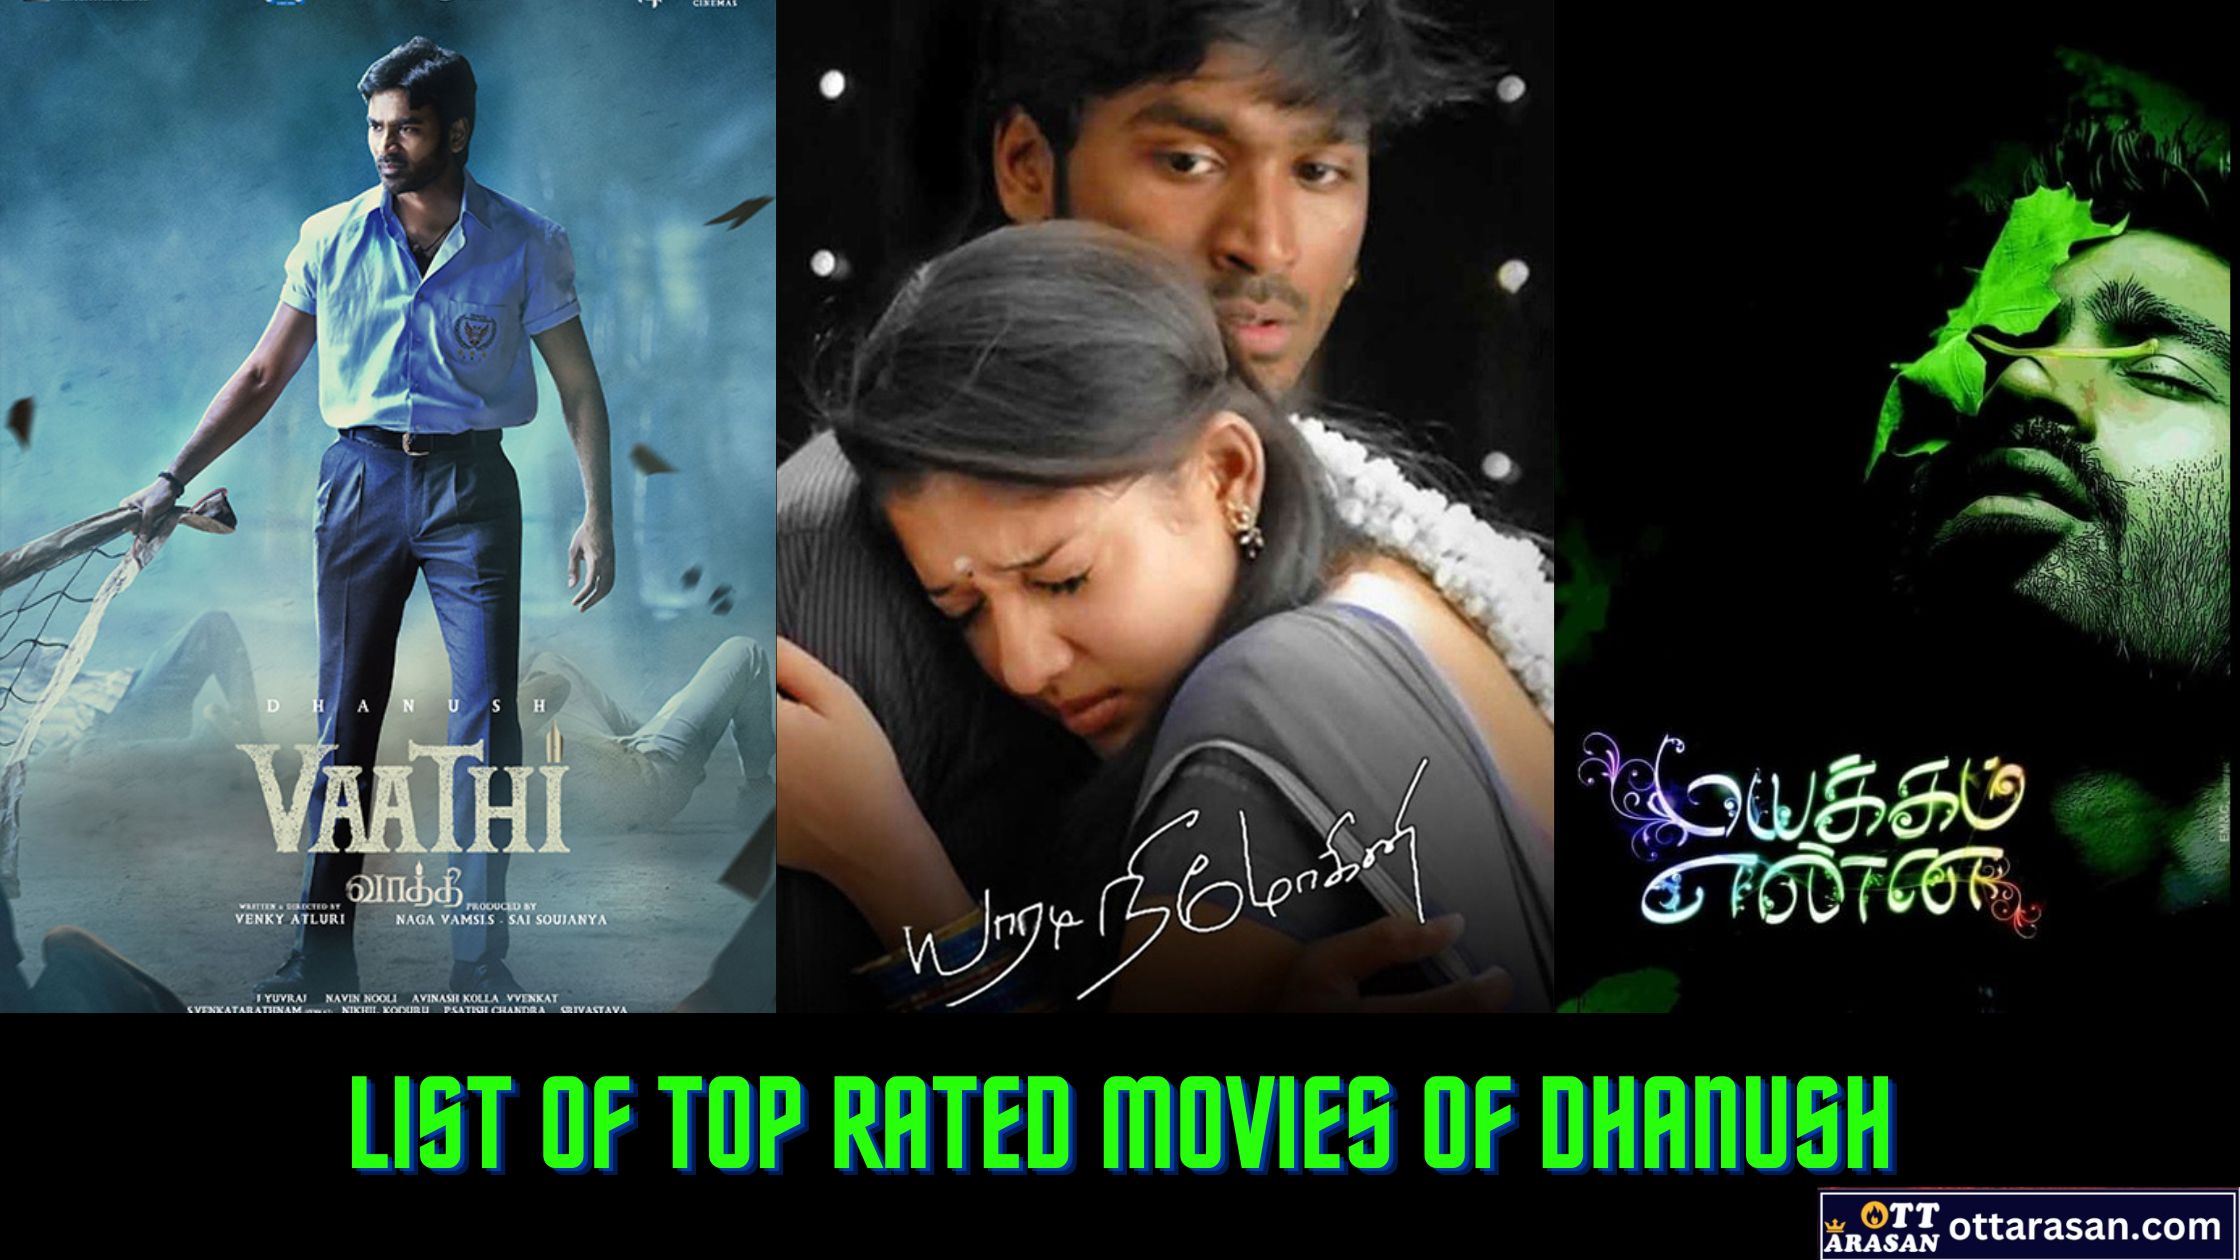 Dhanush Best Movie List | Top Rated Movies of Dhanush